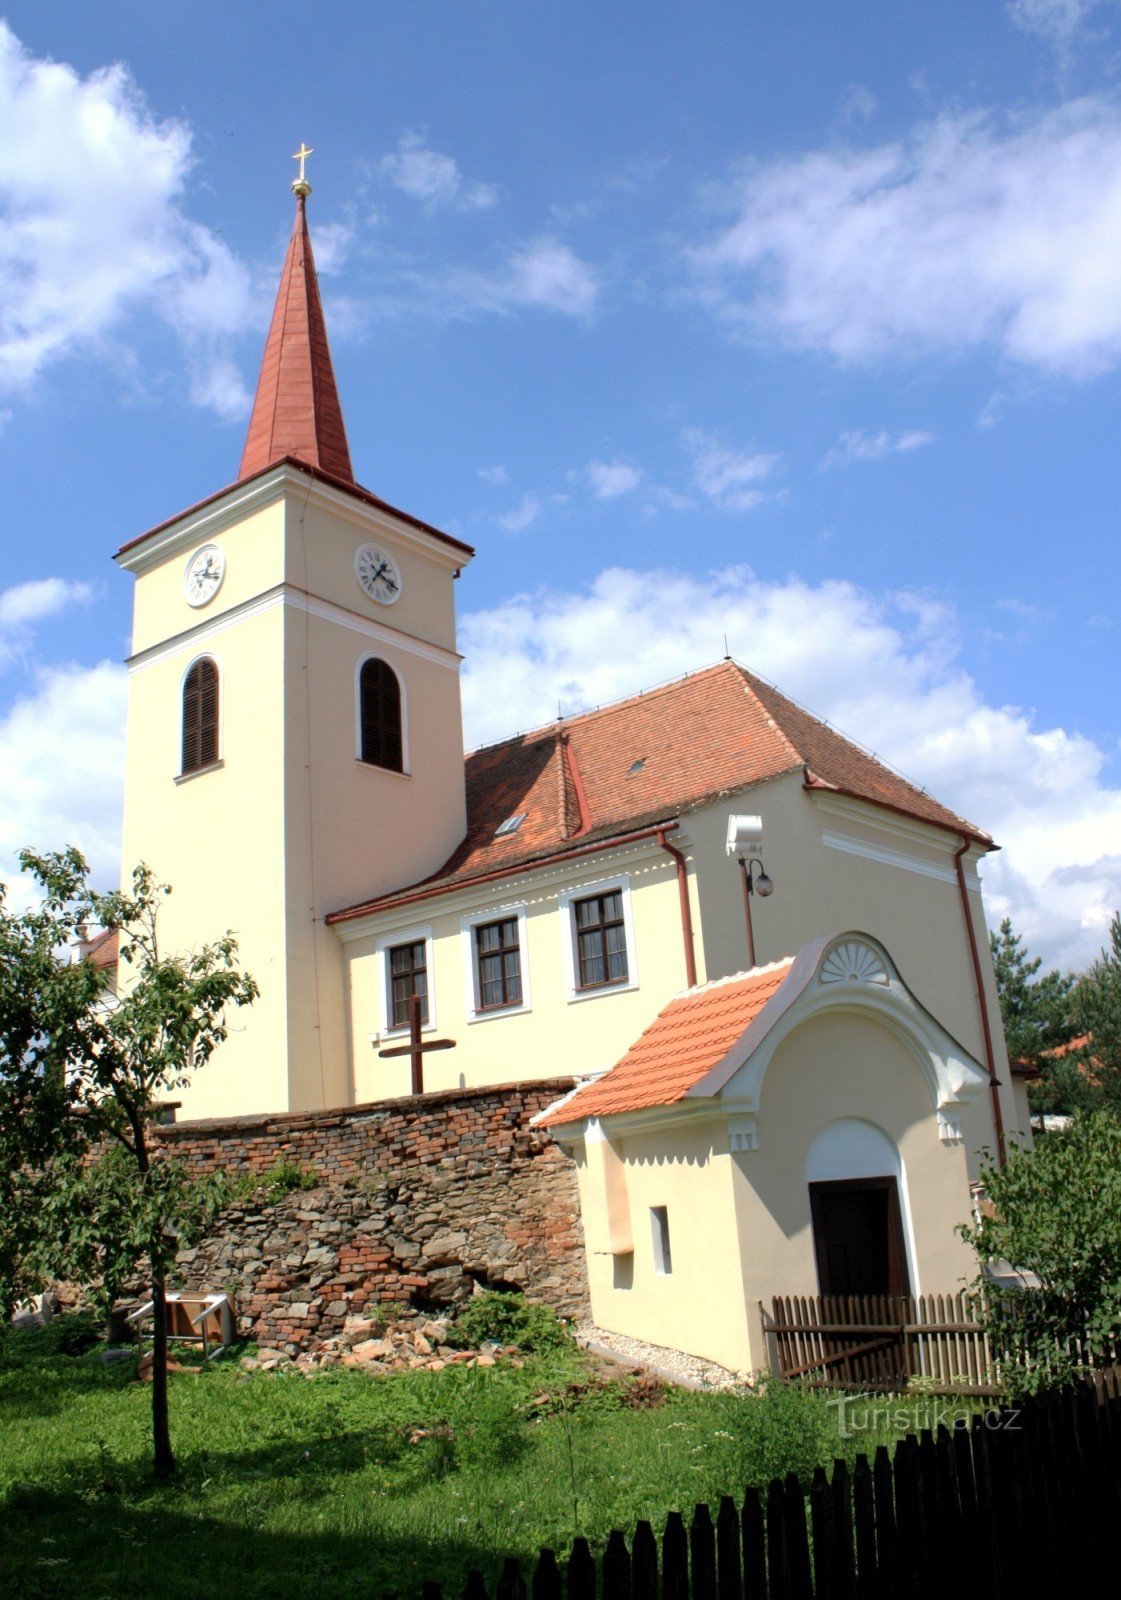 Domašov - Biserica Sf. Lawrence